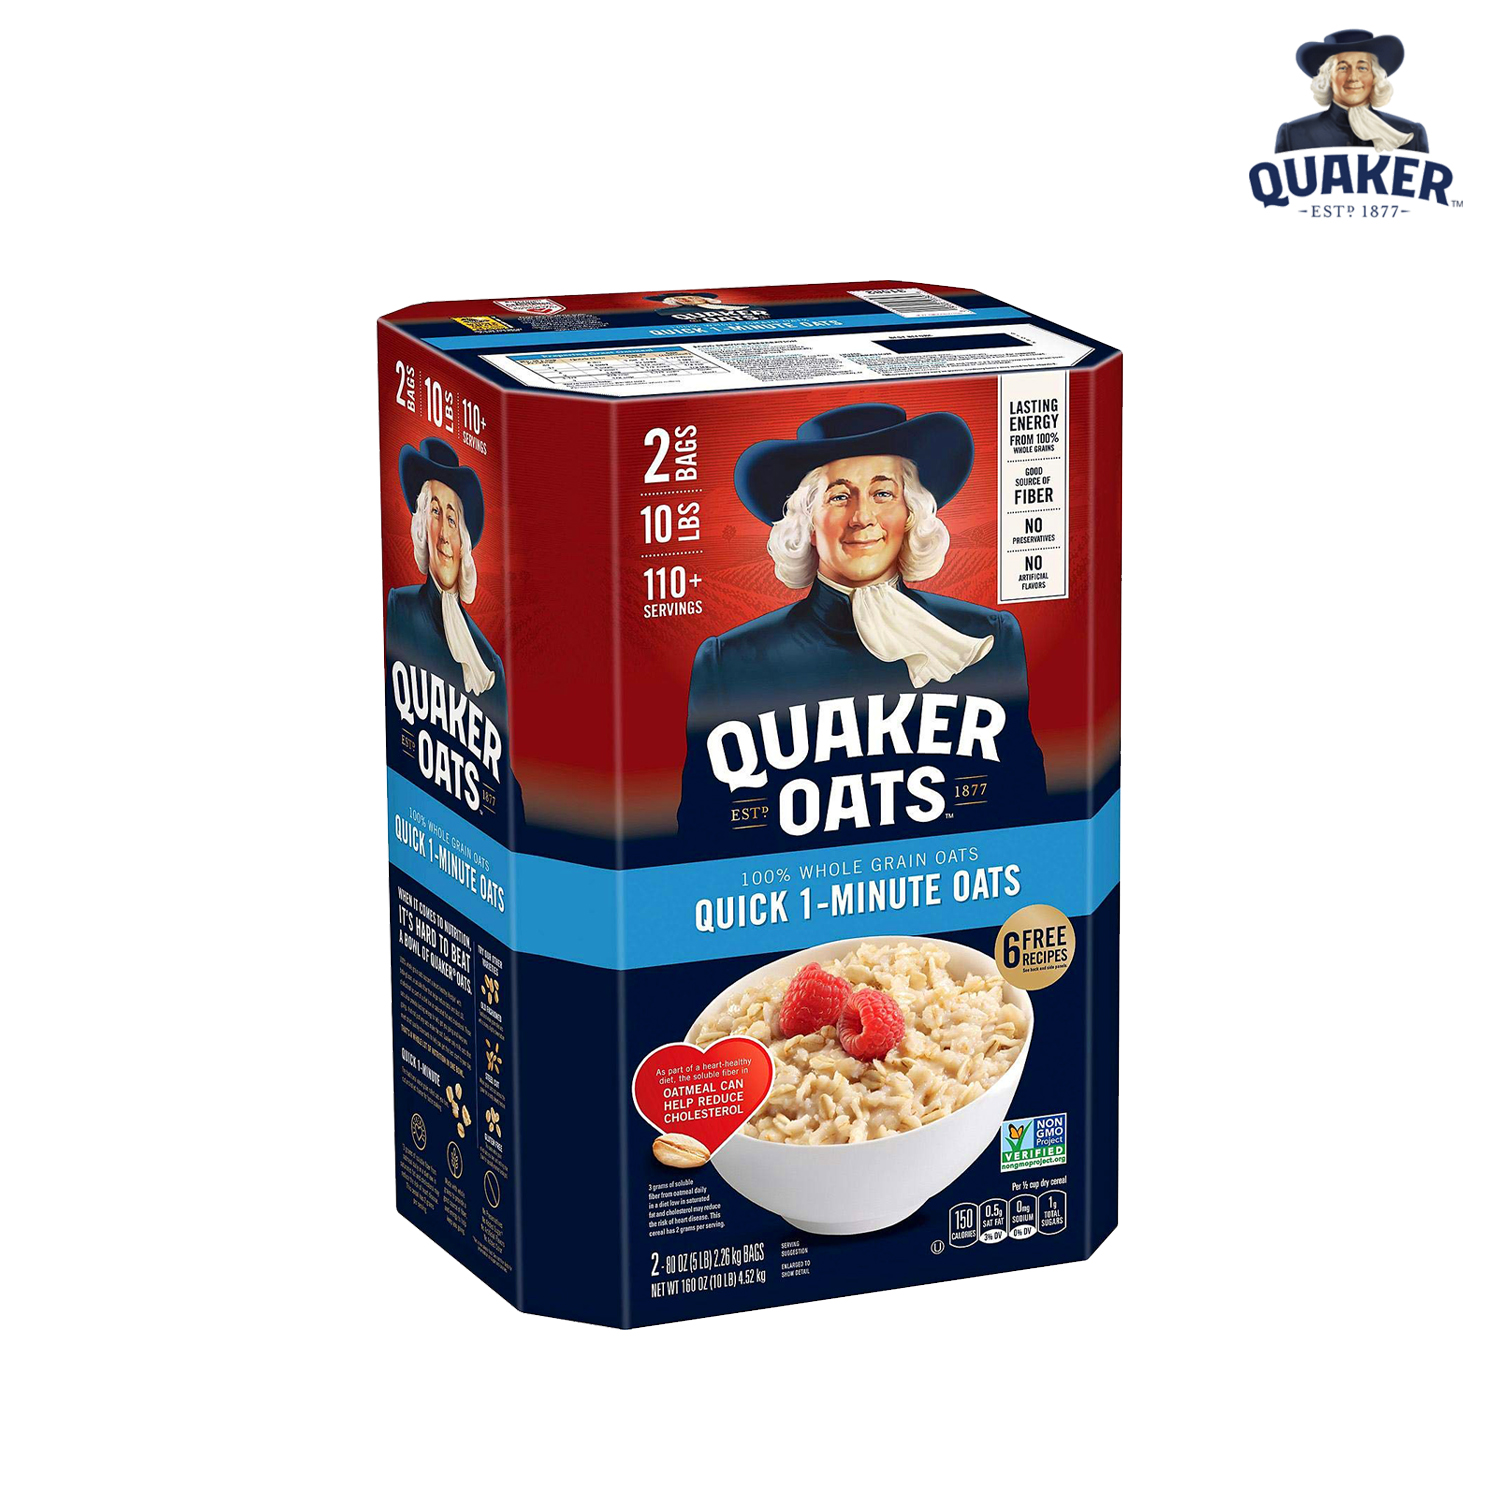 Yến Mạch Quaker Oats Quick - 1 Minute 4,52kg (Dạng Hạt Cán Vỡ) - Thực phẩm ăn kiêng hỗ trợ giảm cân tốt cho sức khỏe